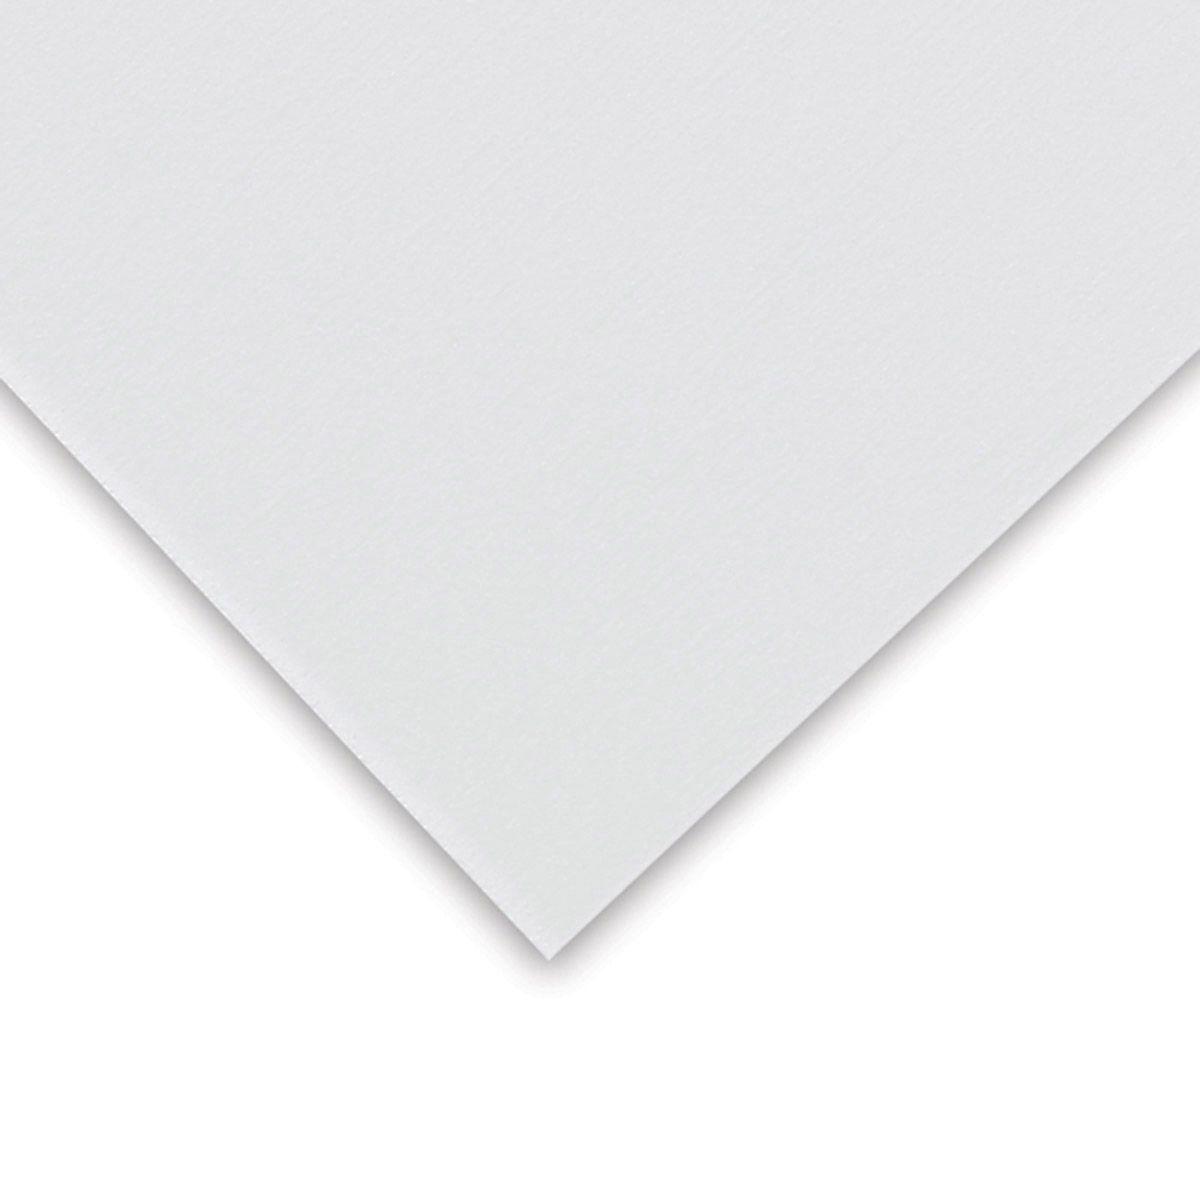 Pastel Premier Sanded Paper Med Grit, White Sheet 20" x 26"